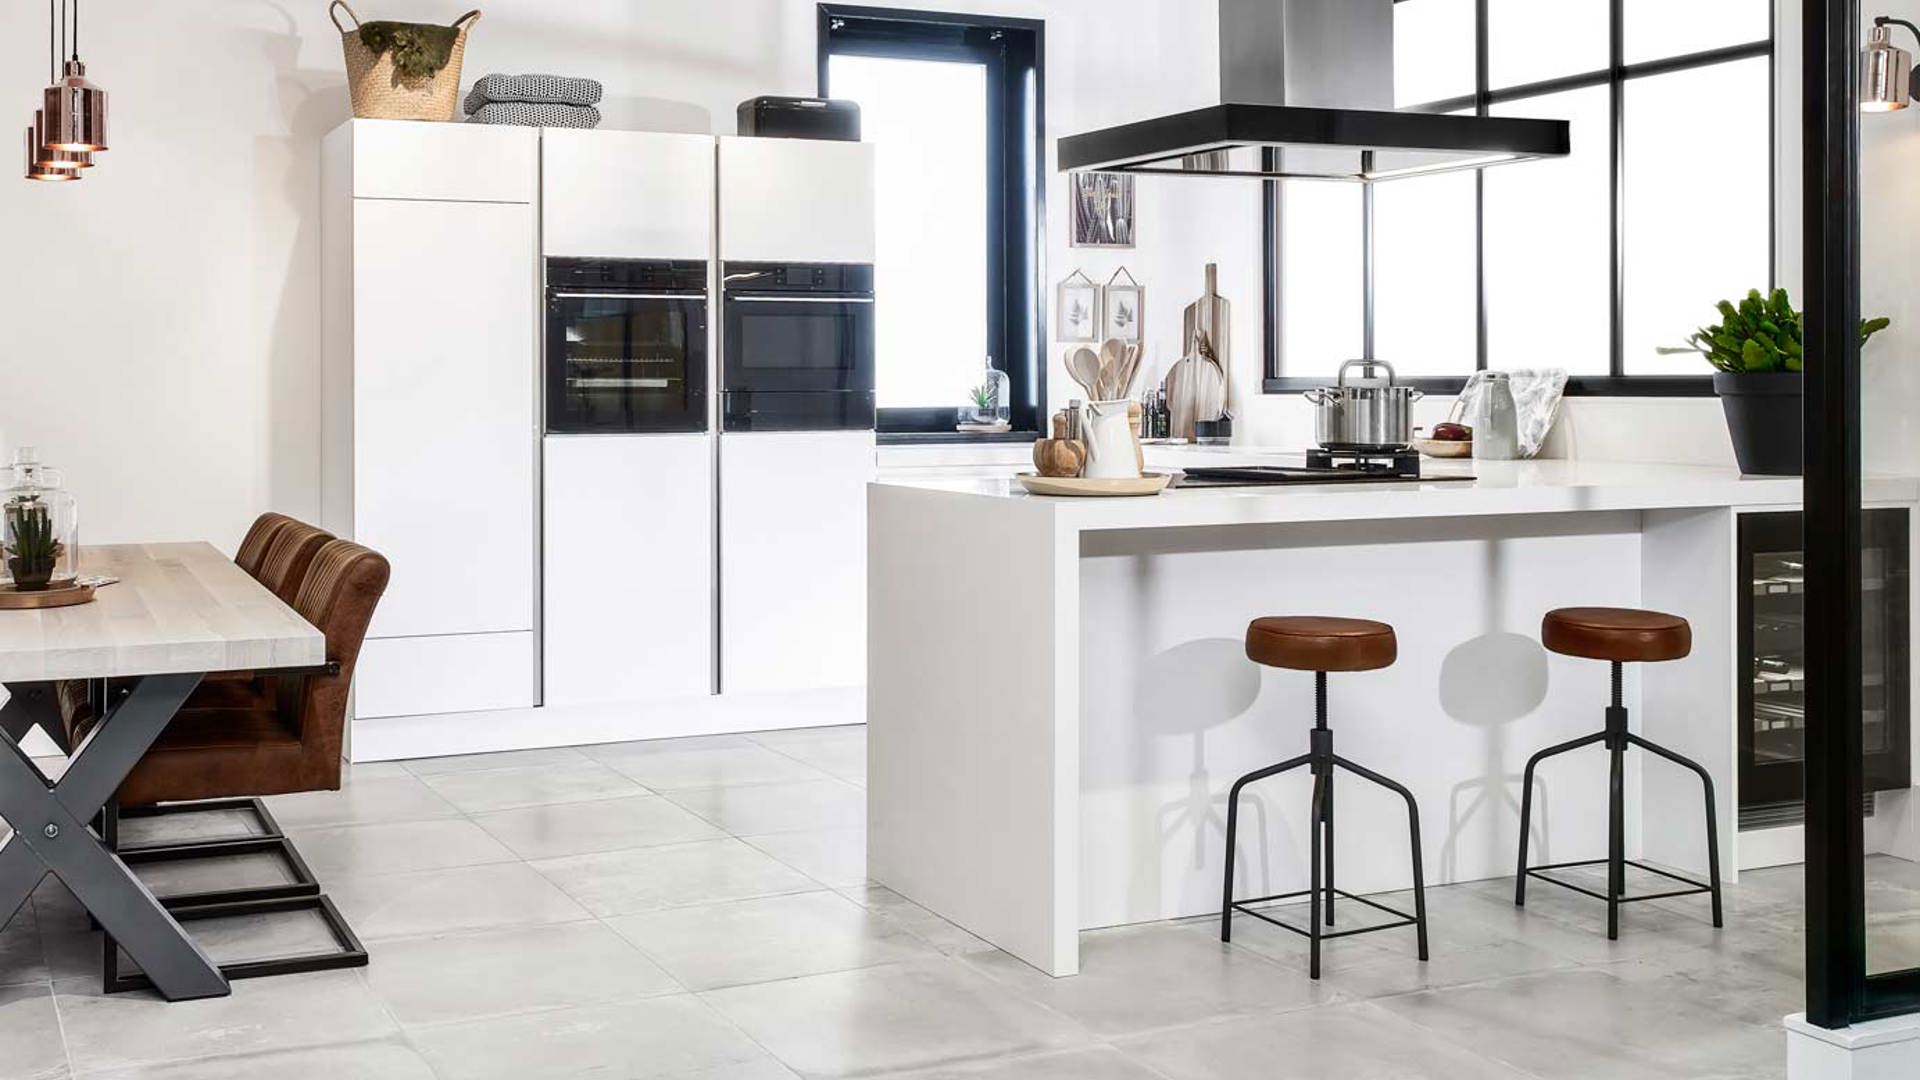 Deze moderne u-keuken is uitgevoerd in de kleur mat wit